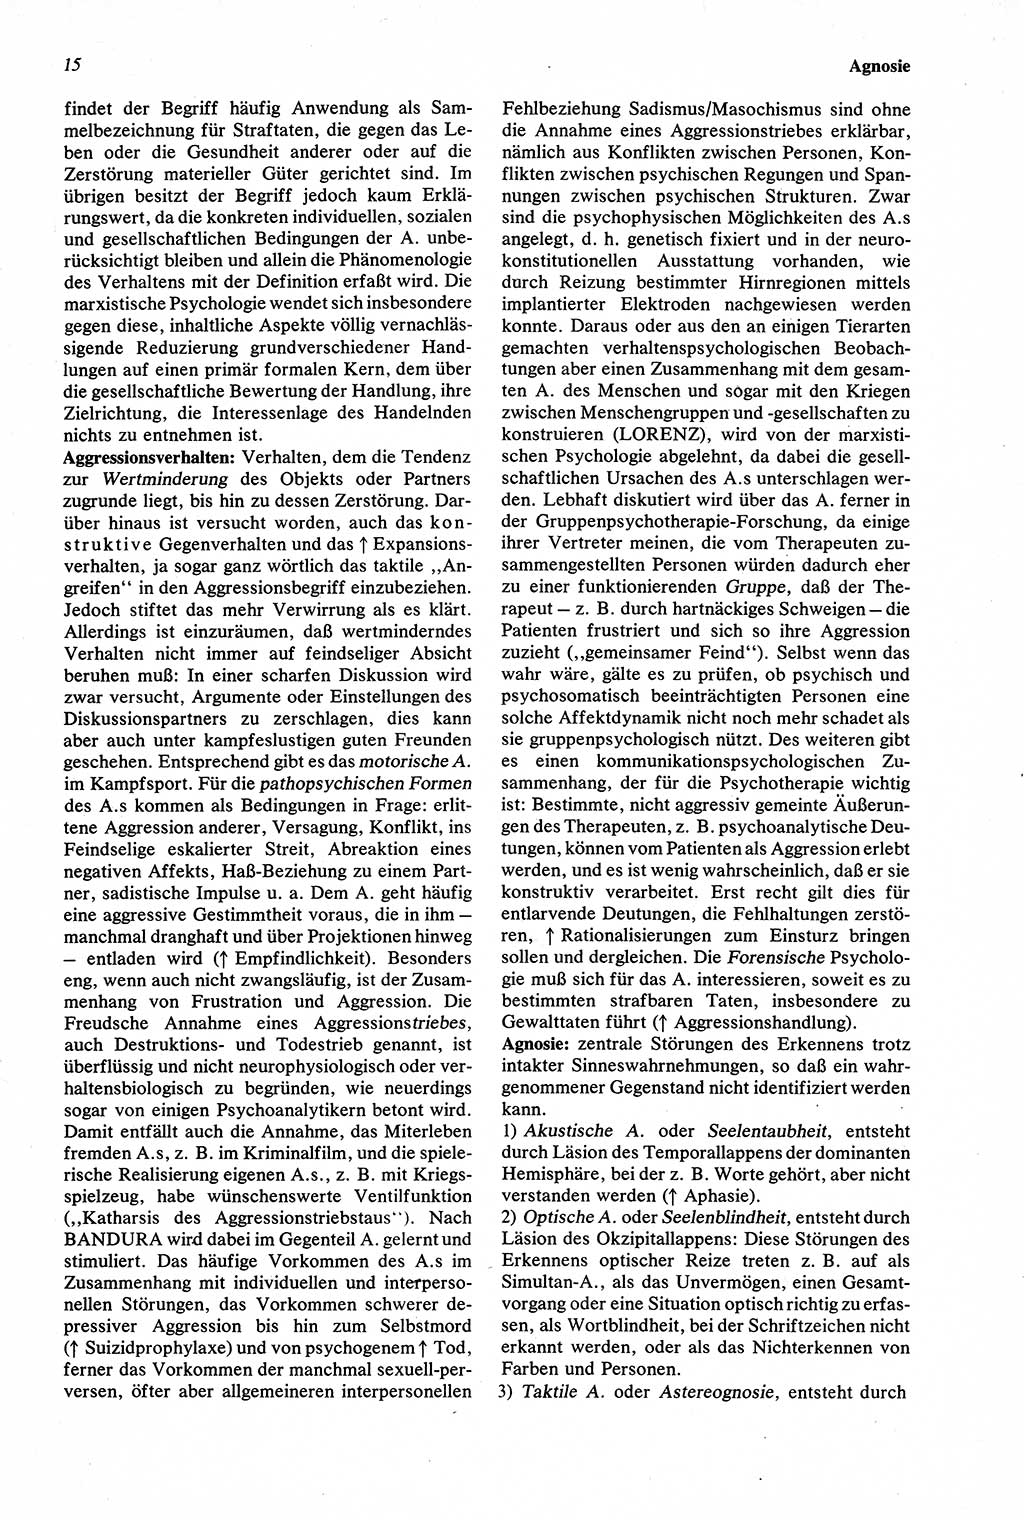 Wörterbuch der Psychologie [Deutsche Demokratische Republik (DDR)] 1976, Seite 15 (Wb. Psych. DDR 1976, S. 15)